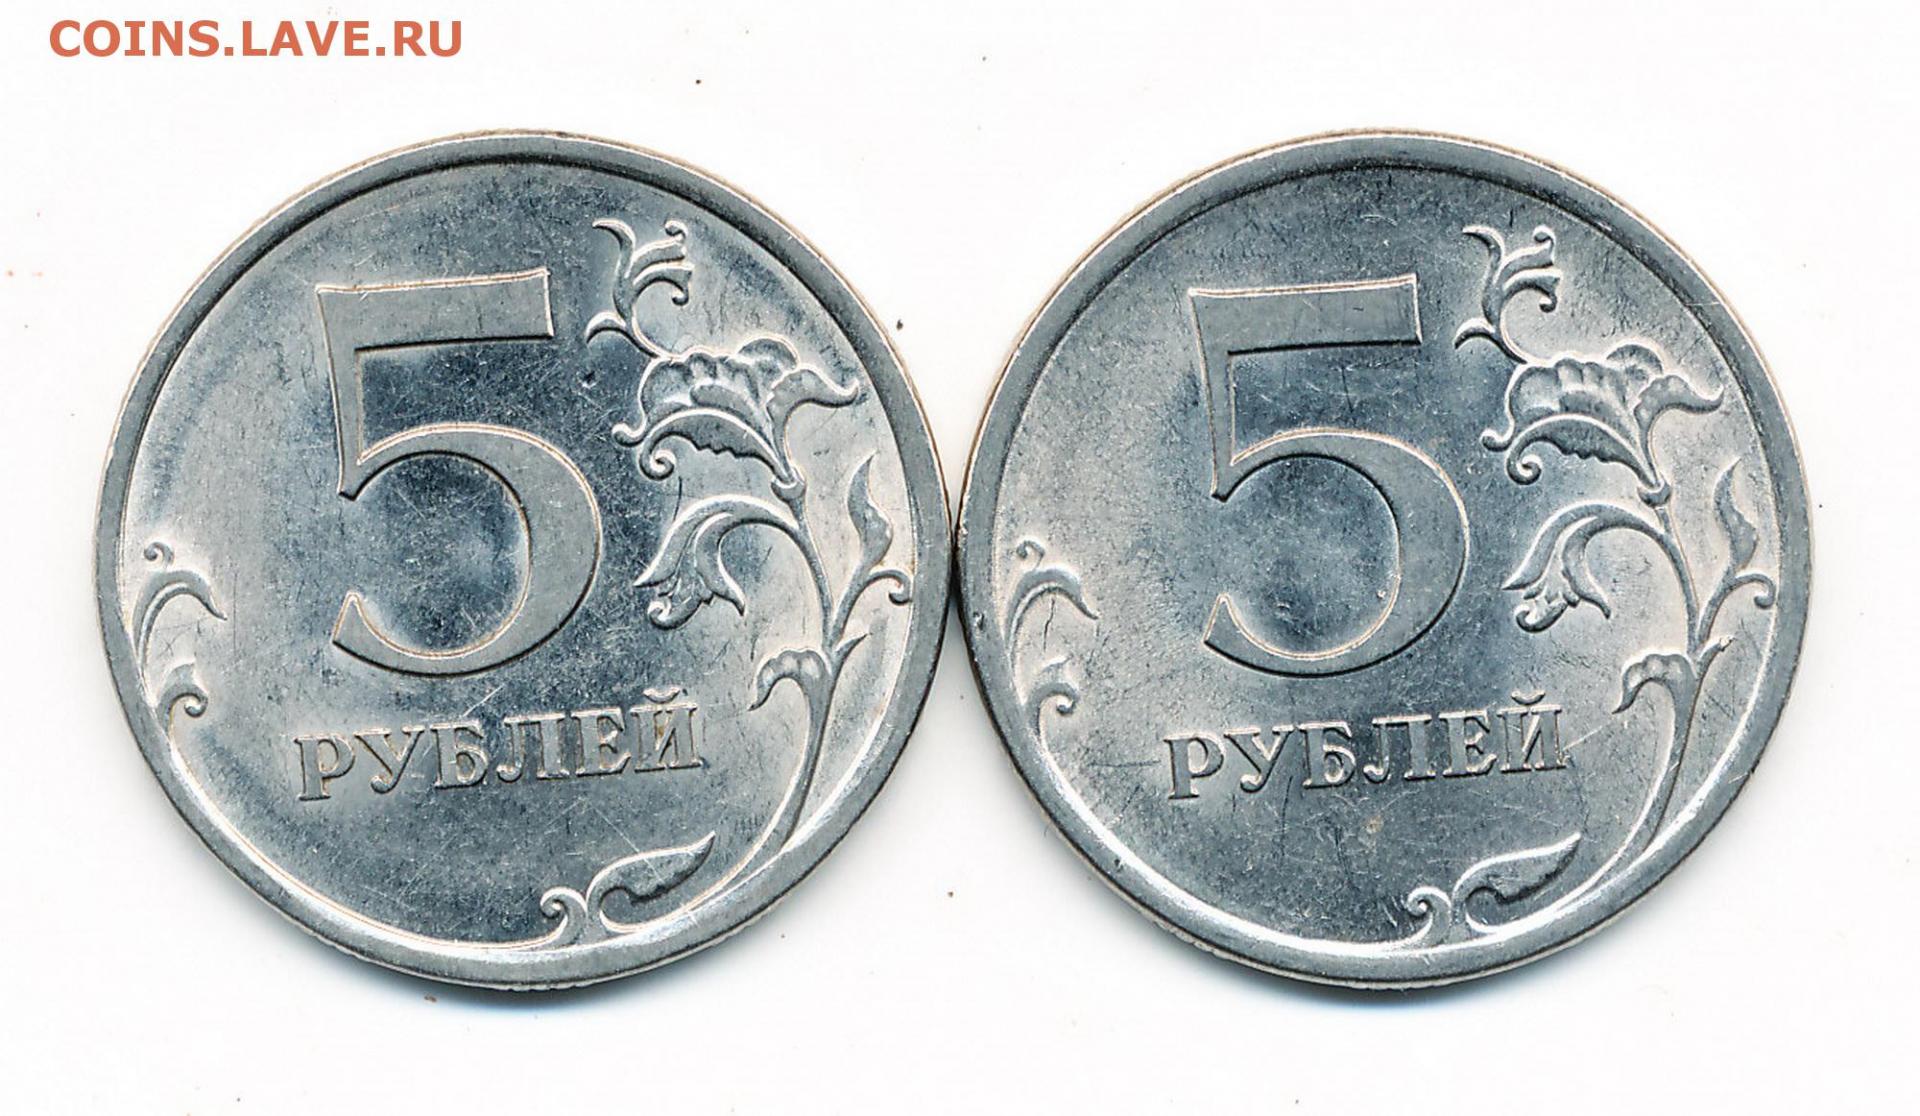 5 рублей с литра. 5 Рублей 2009 СПМД. 5 Рублей 2009 СПМД Аверс г. 5 Рублей 2009 в другом металле. Фото 5 рублей 2009.